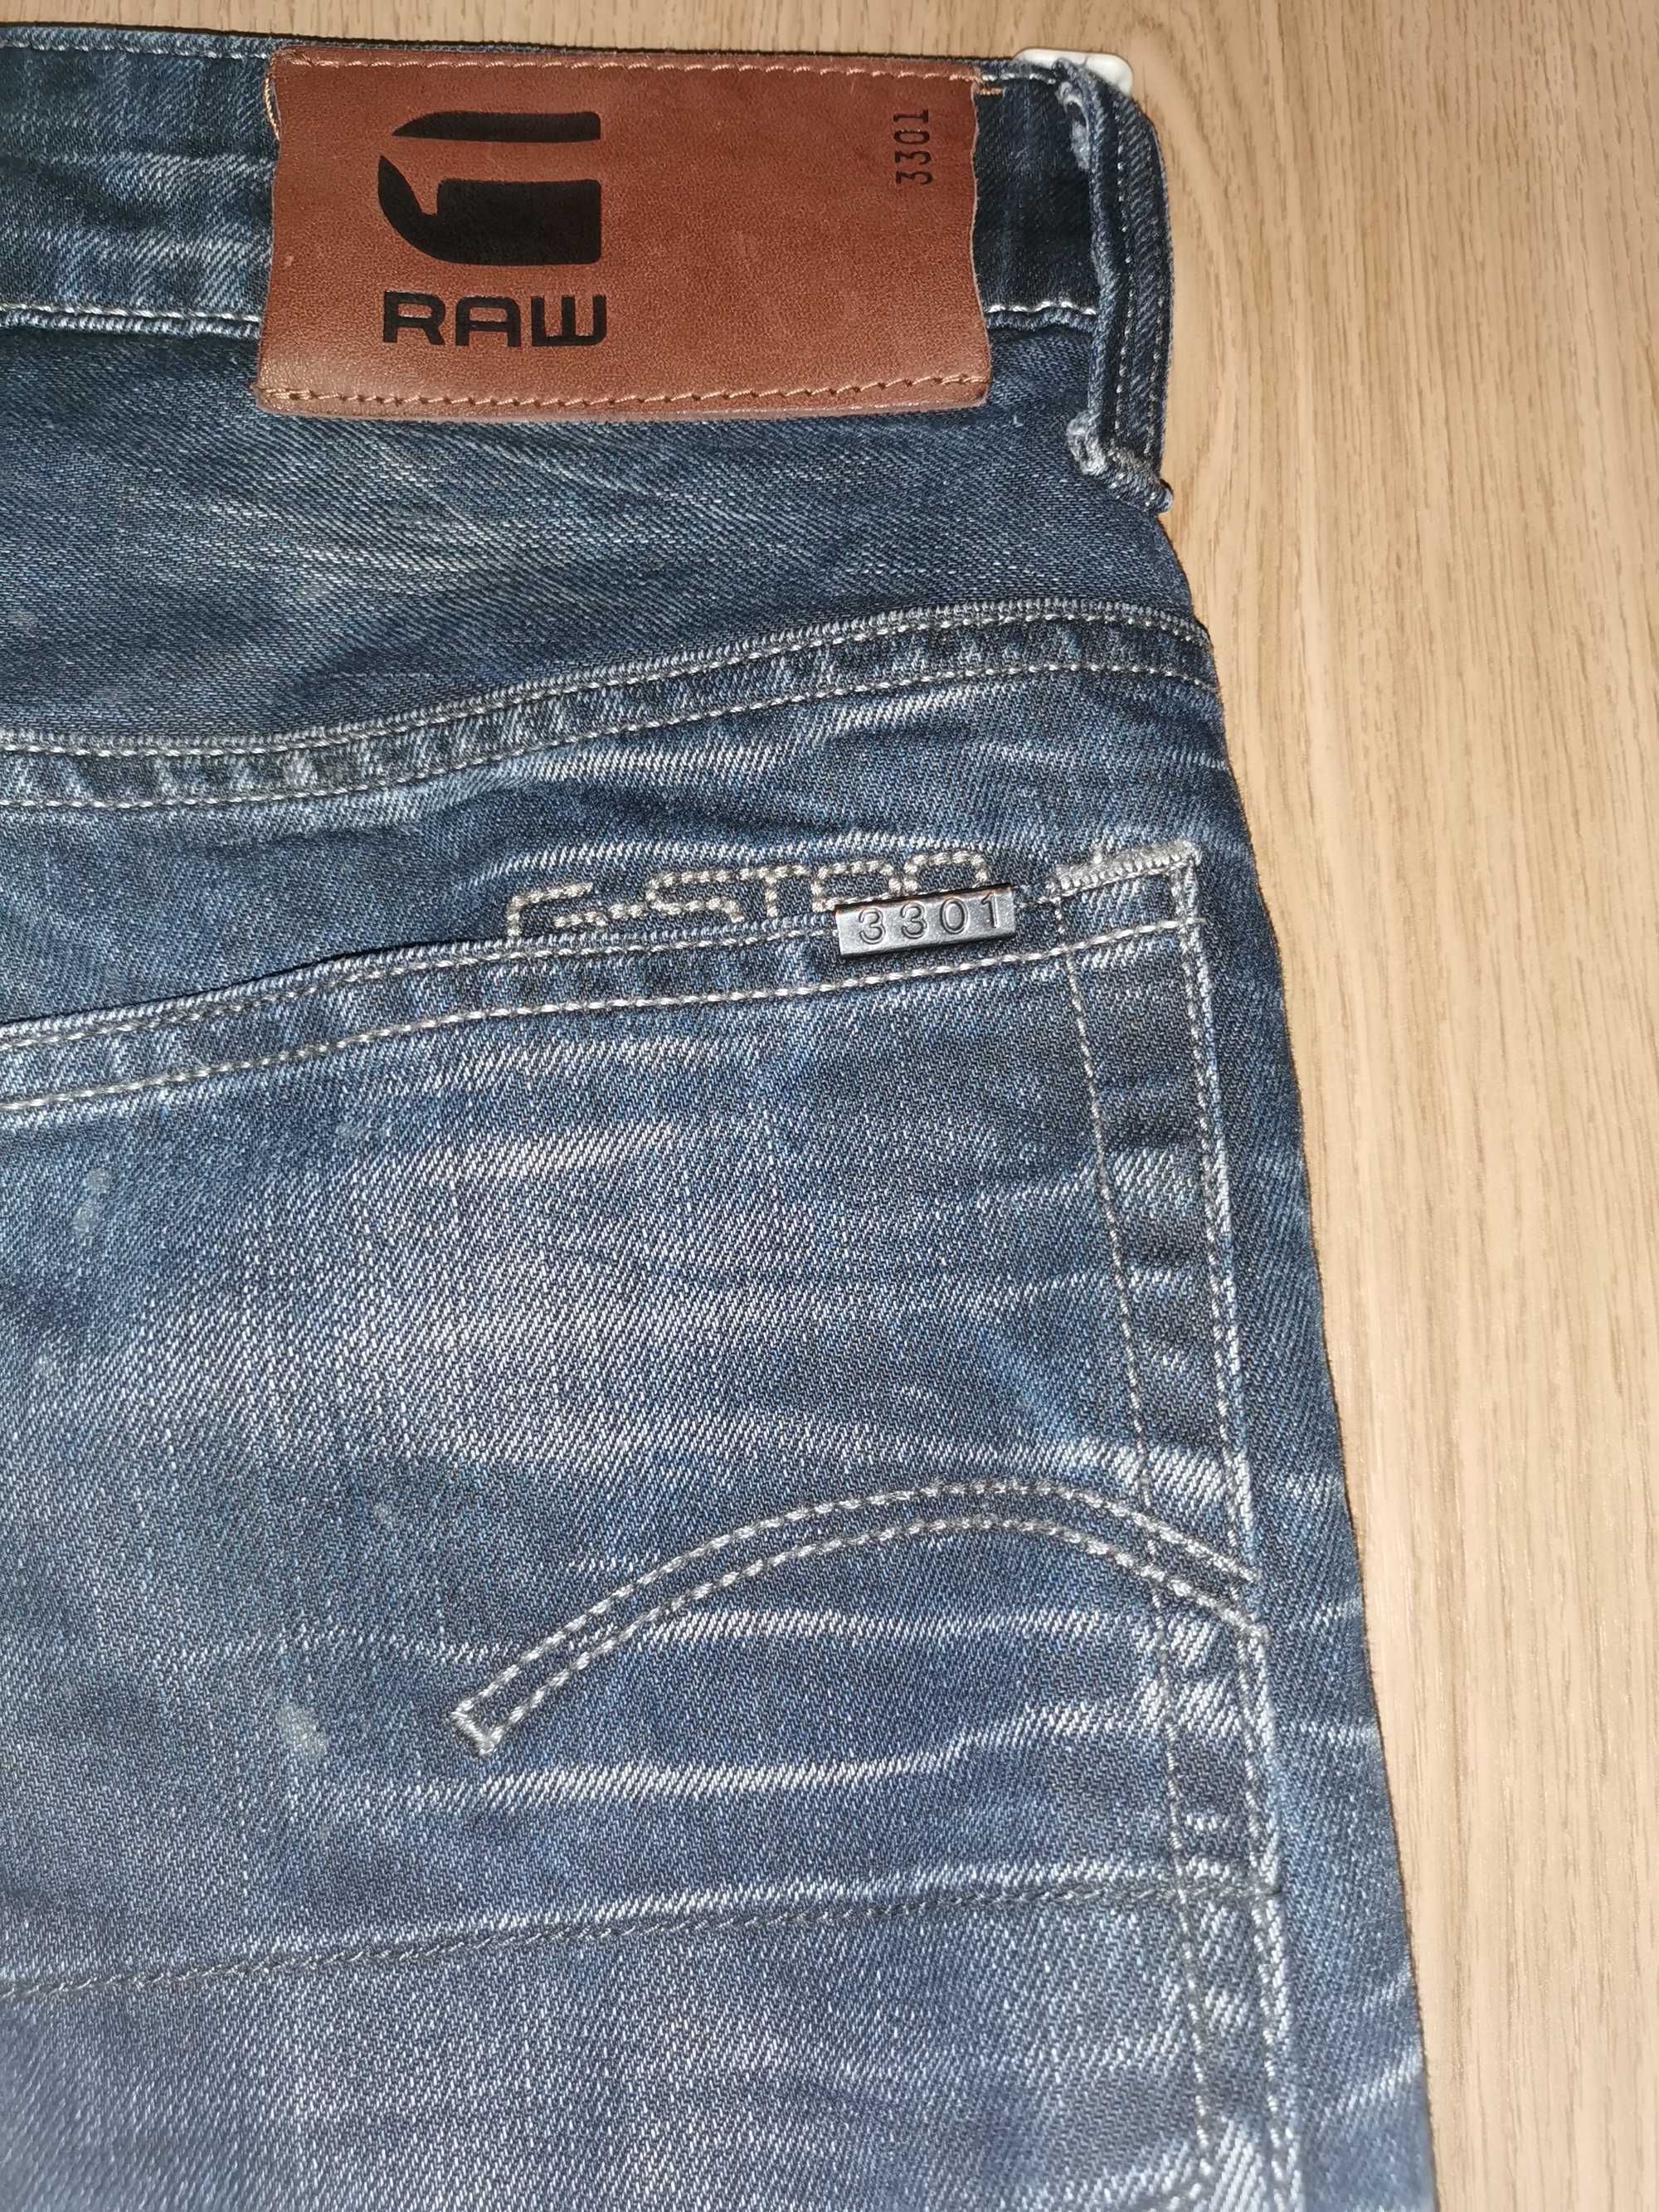 Spodnie męskie jeans G-Star Raw model 3301 rozmiar 31